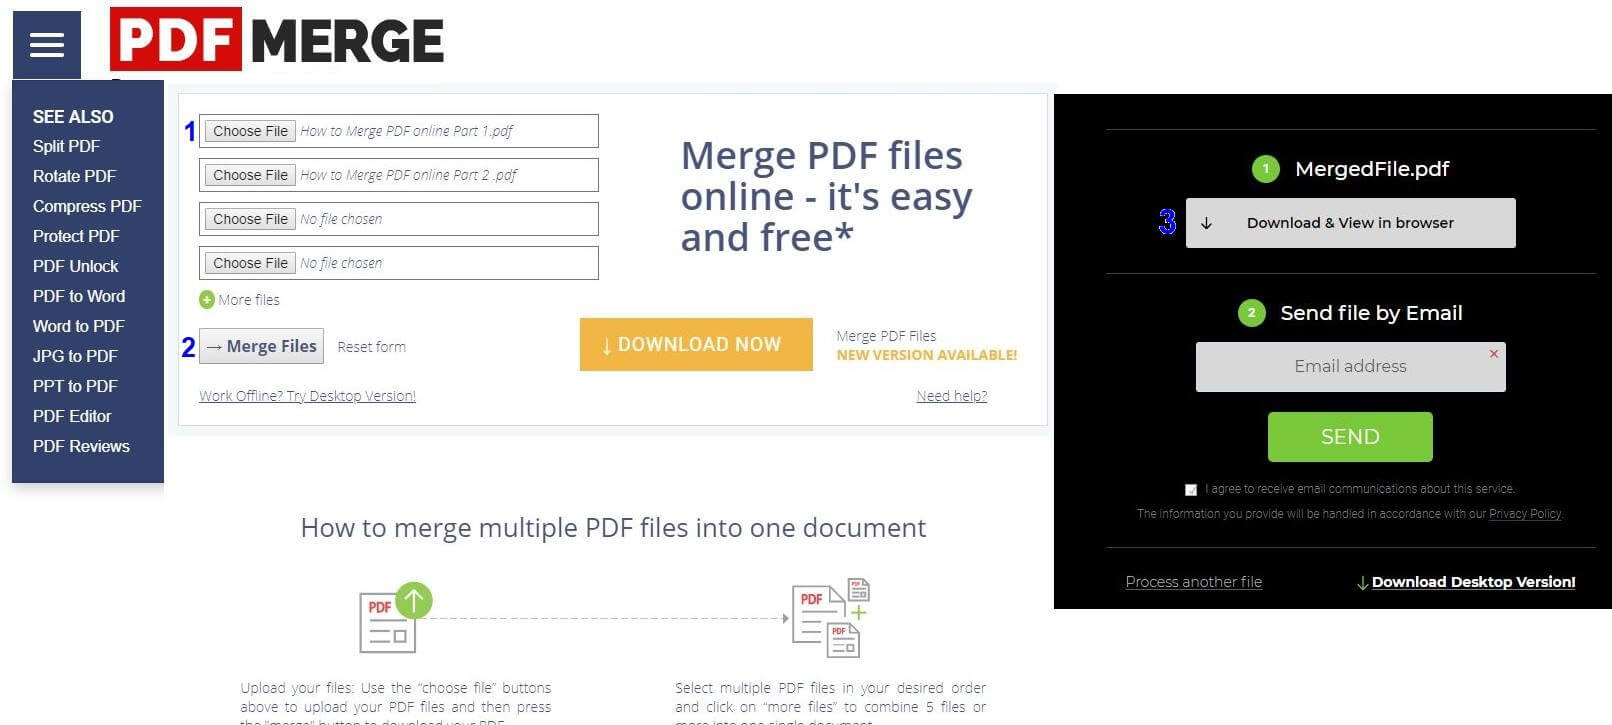 free pdf merger online